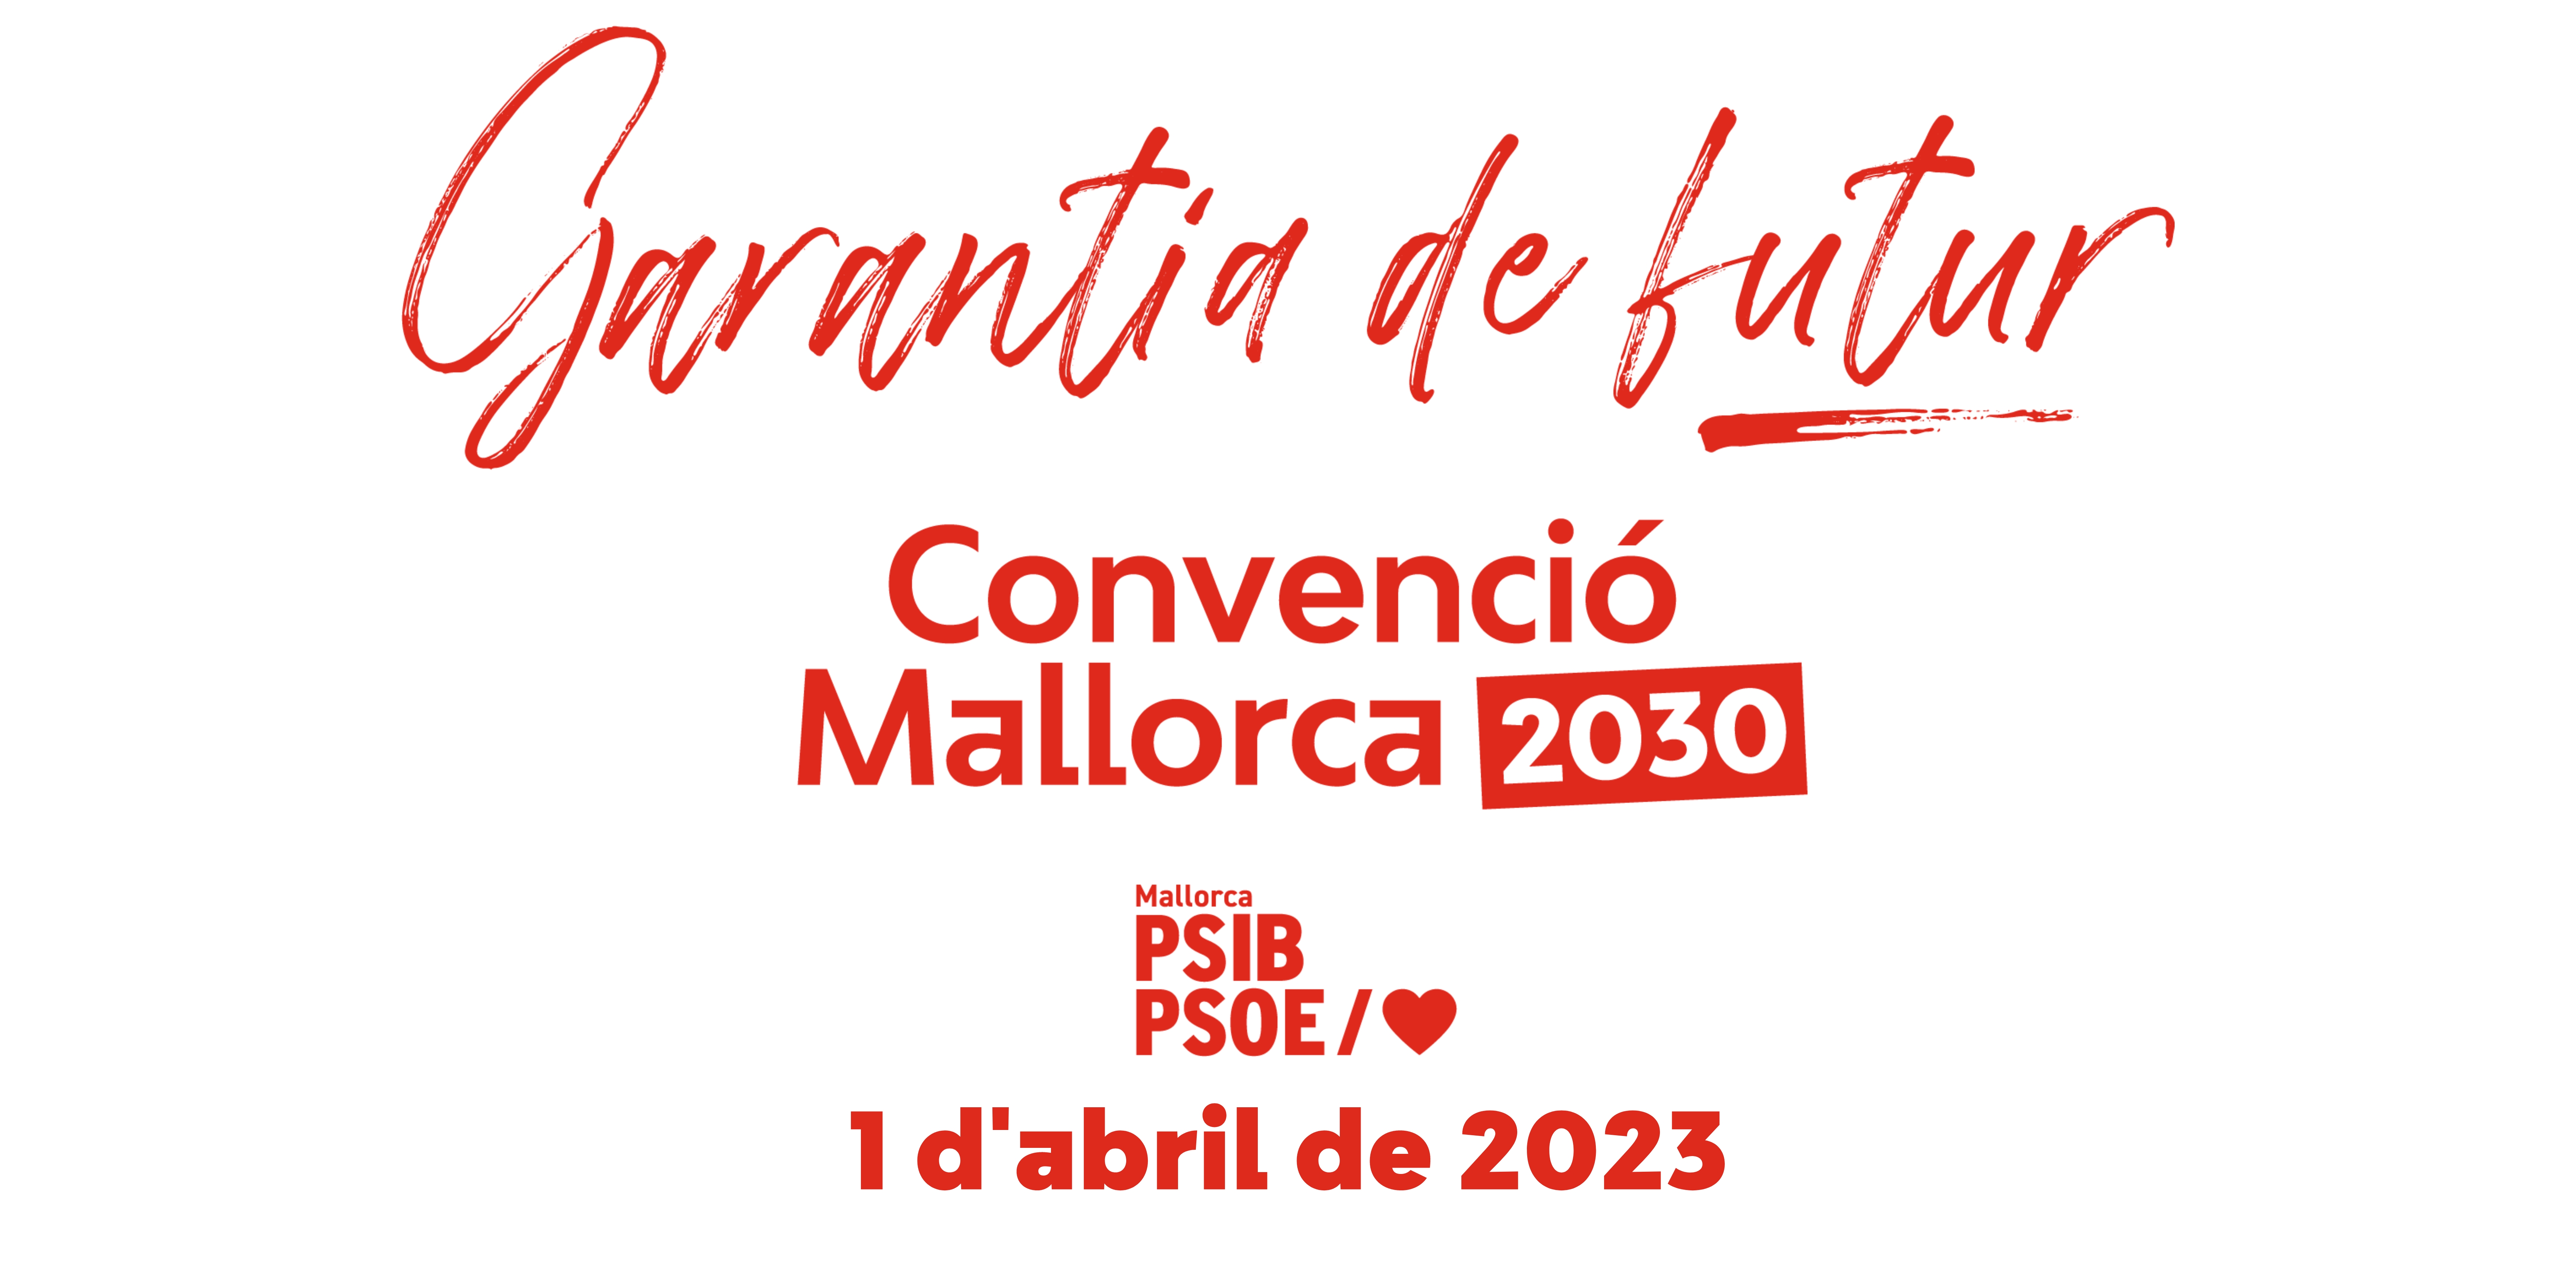 Banner Convenció Mallorca 2030